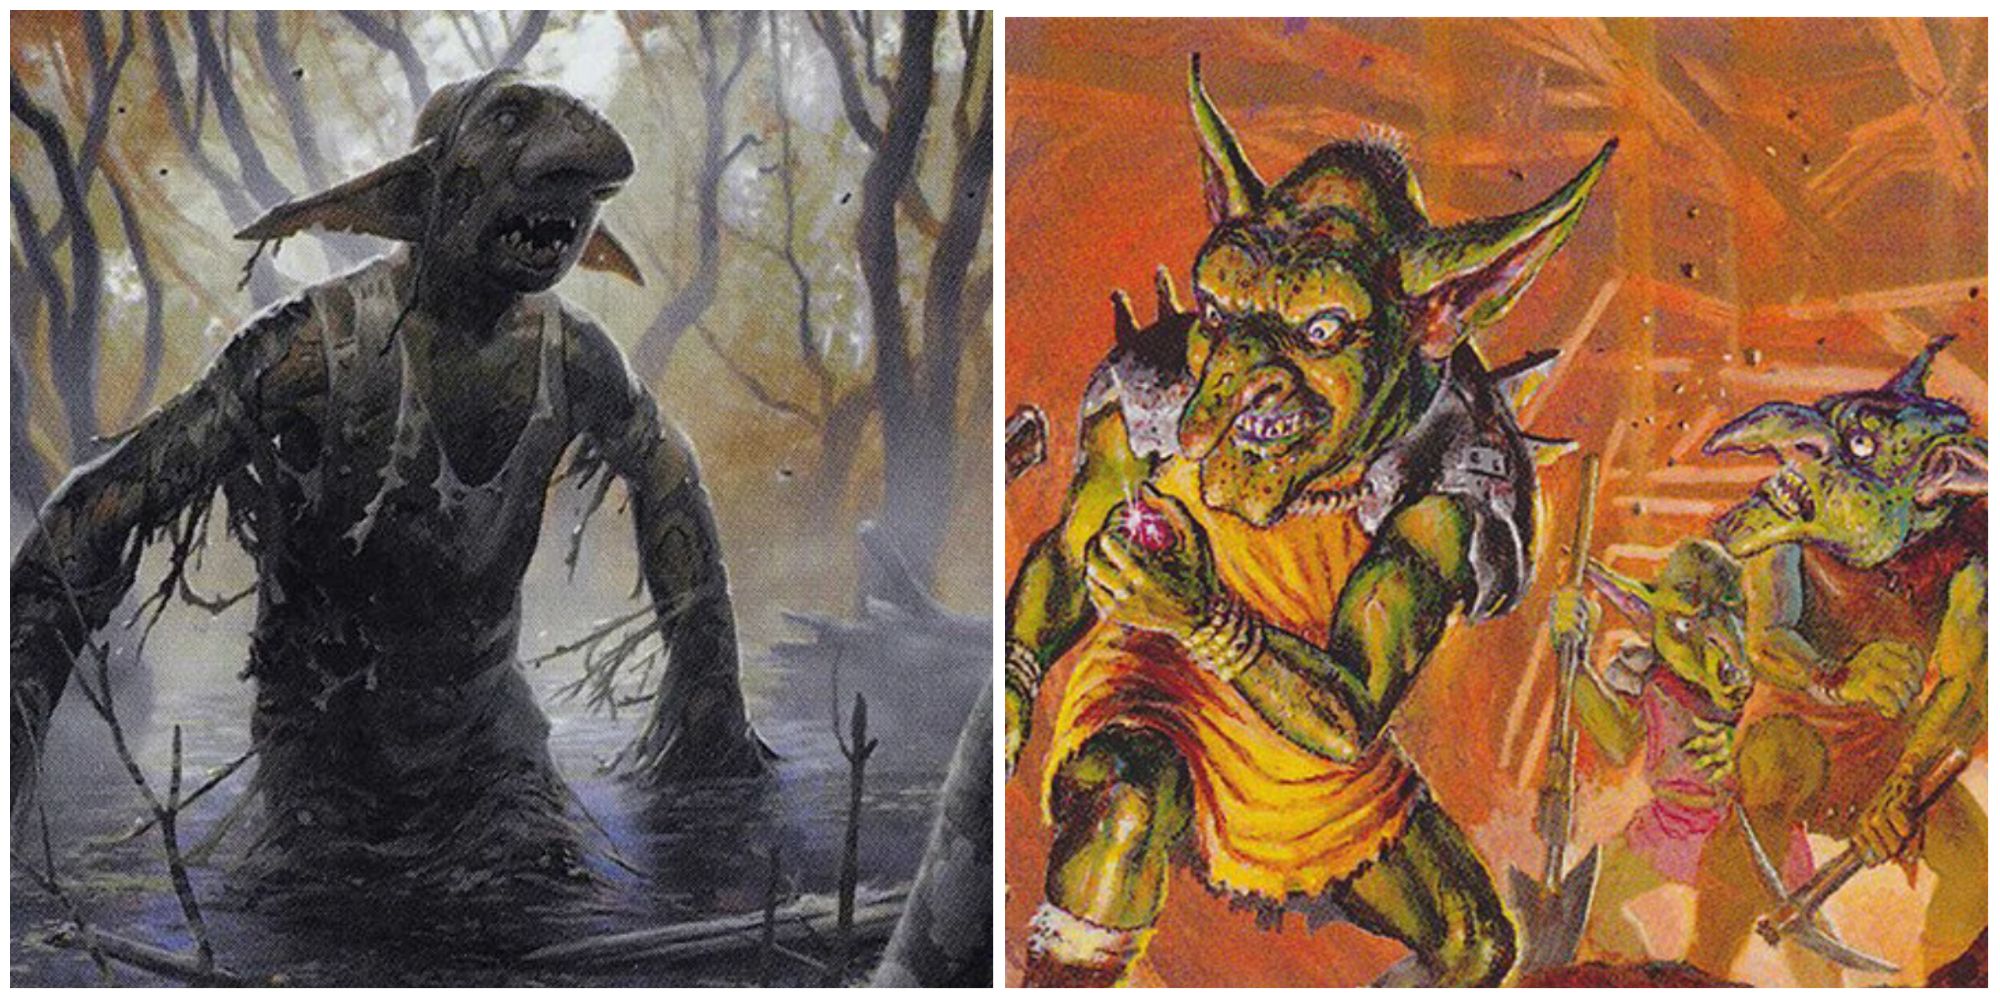 Skirk Prospector and putrid goblin card artworks